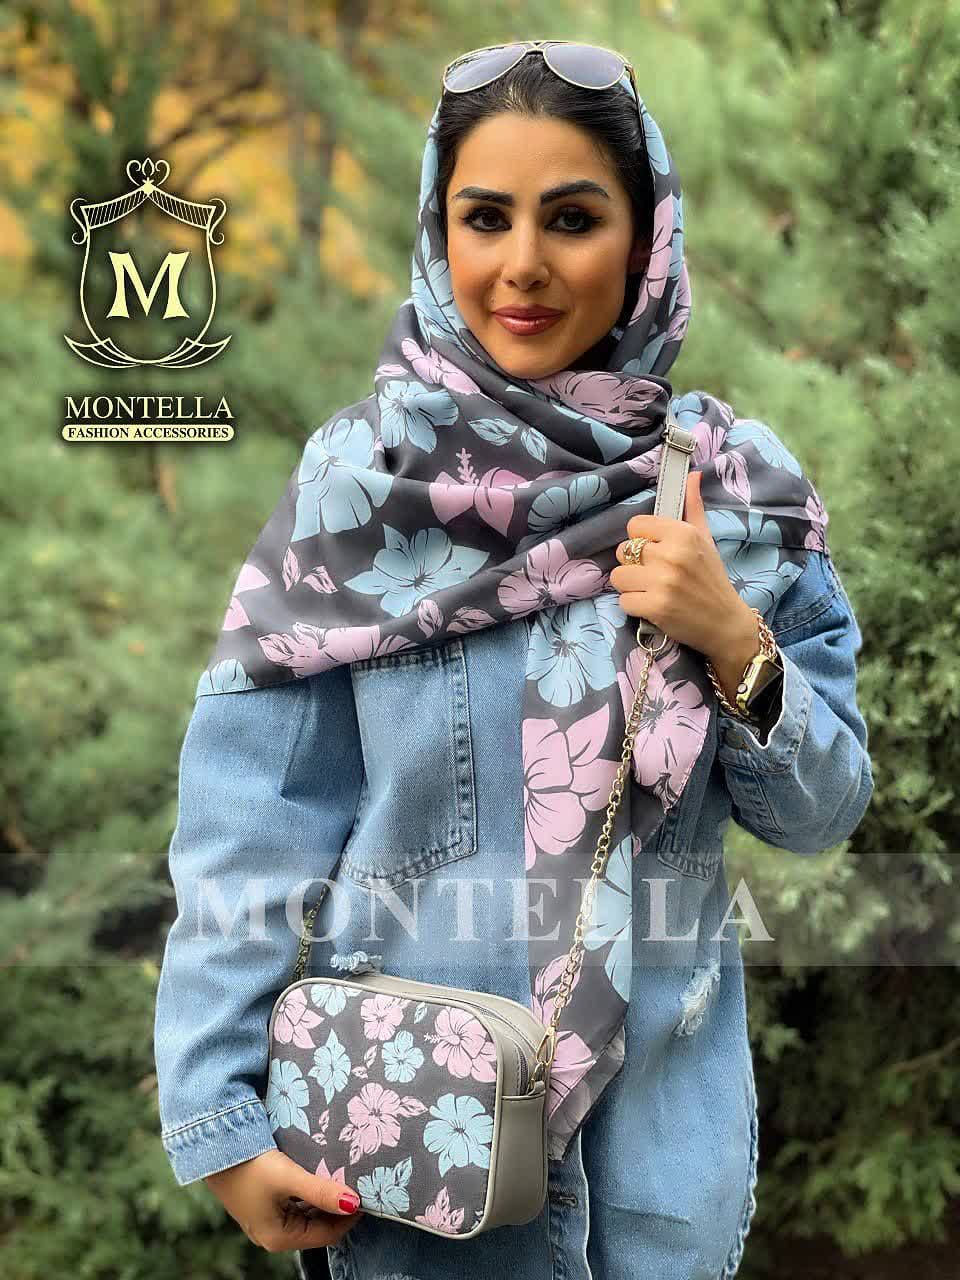 ست کیف و روسری زنانه طرح سانا رنگ صورتی با کیف کوچک کیفیت عالی با ارسال رایگان کد mo420